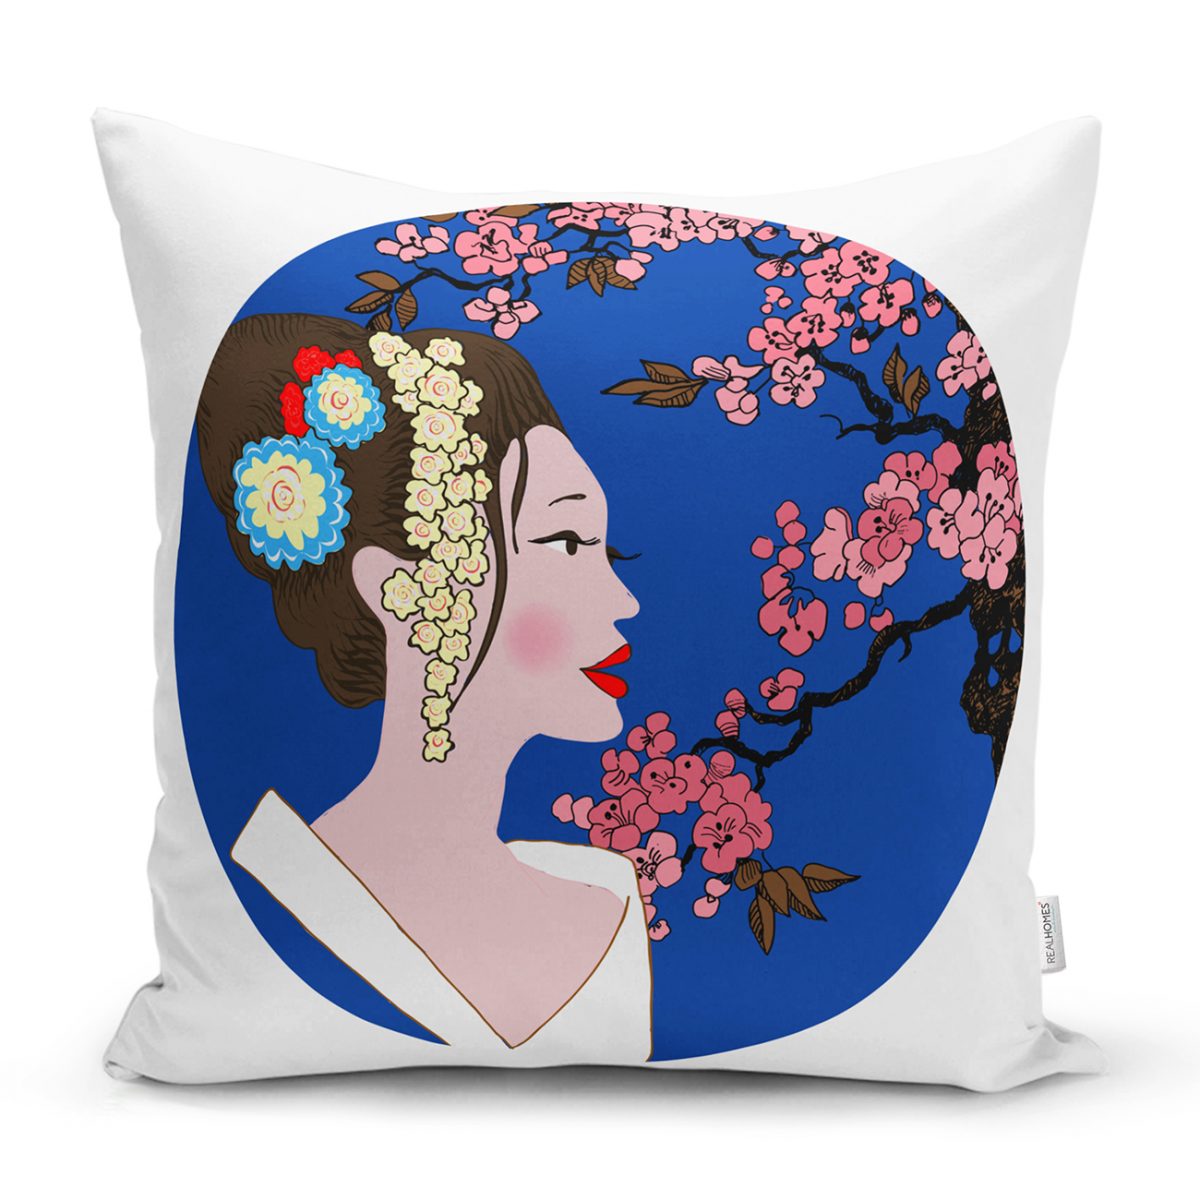 Çiçek Motifli Japon Kız Desenli Dekoratif Yastık Kılıfı Realhomes